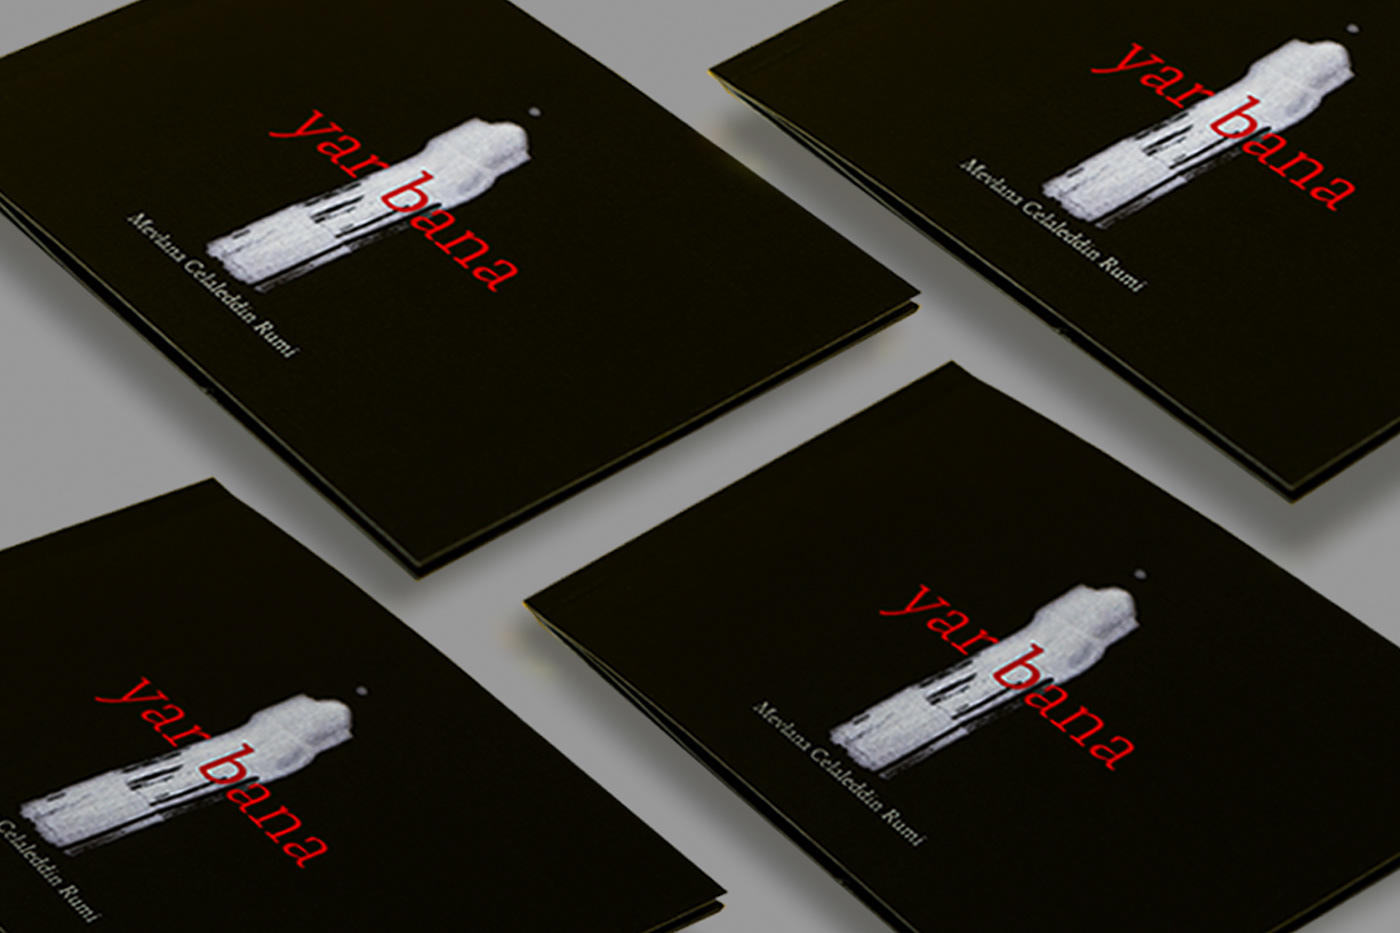 Şiir Kitabı poetry book design book design Mevlana kitap tasarımı